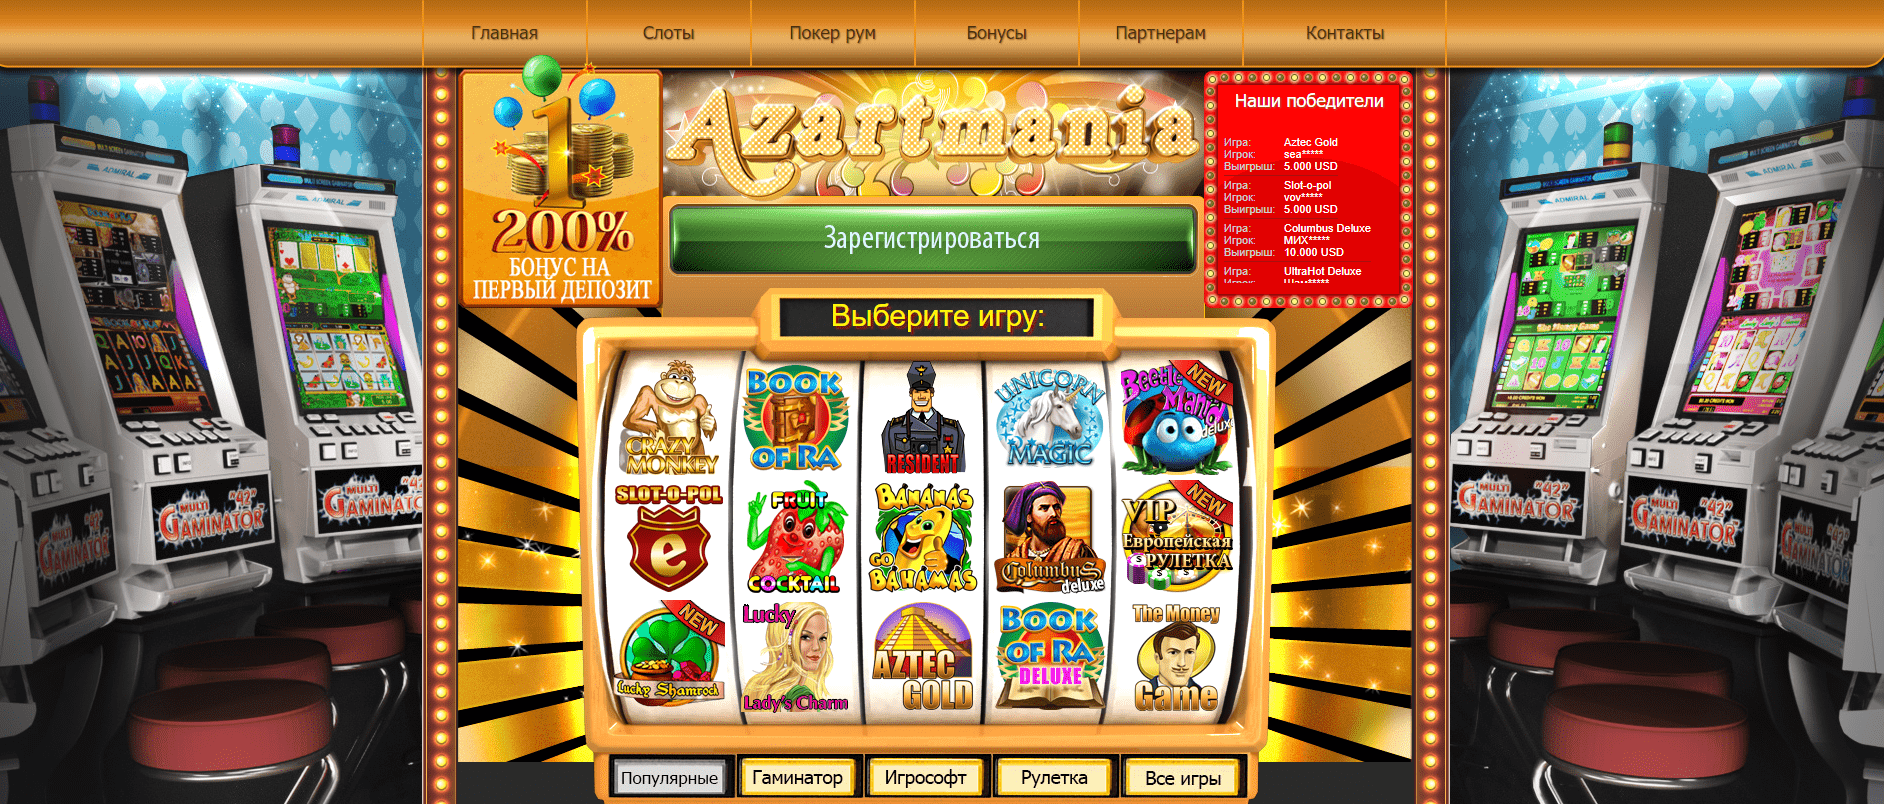 Обзор казино Azartmania: преимущества и недостатки портала